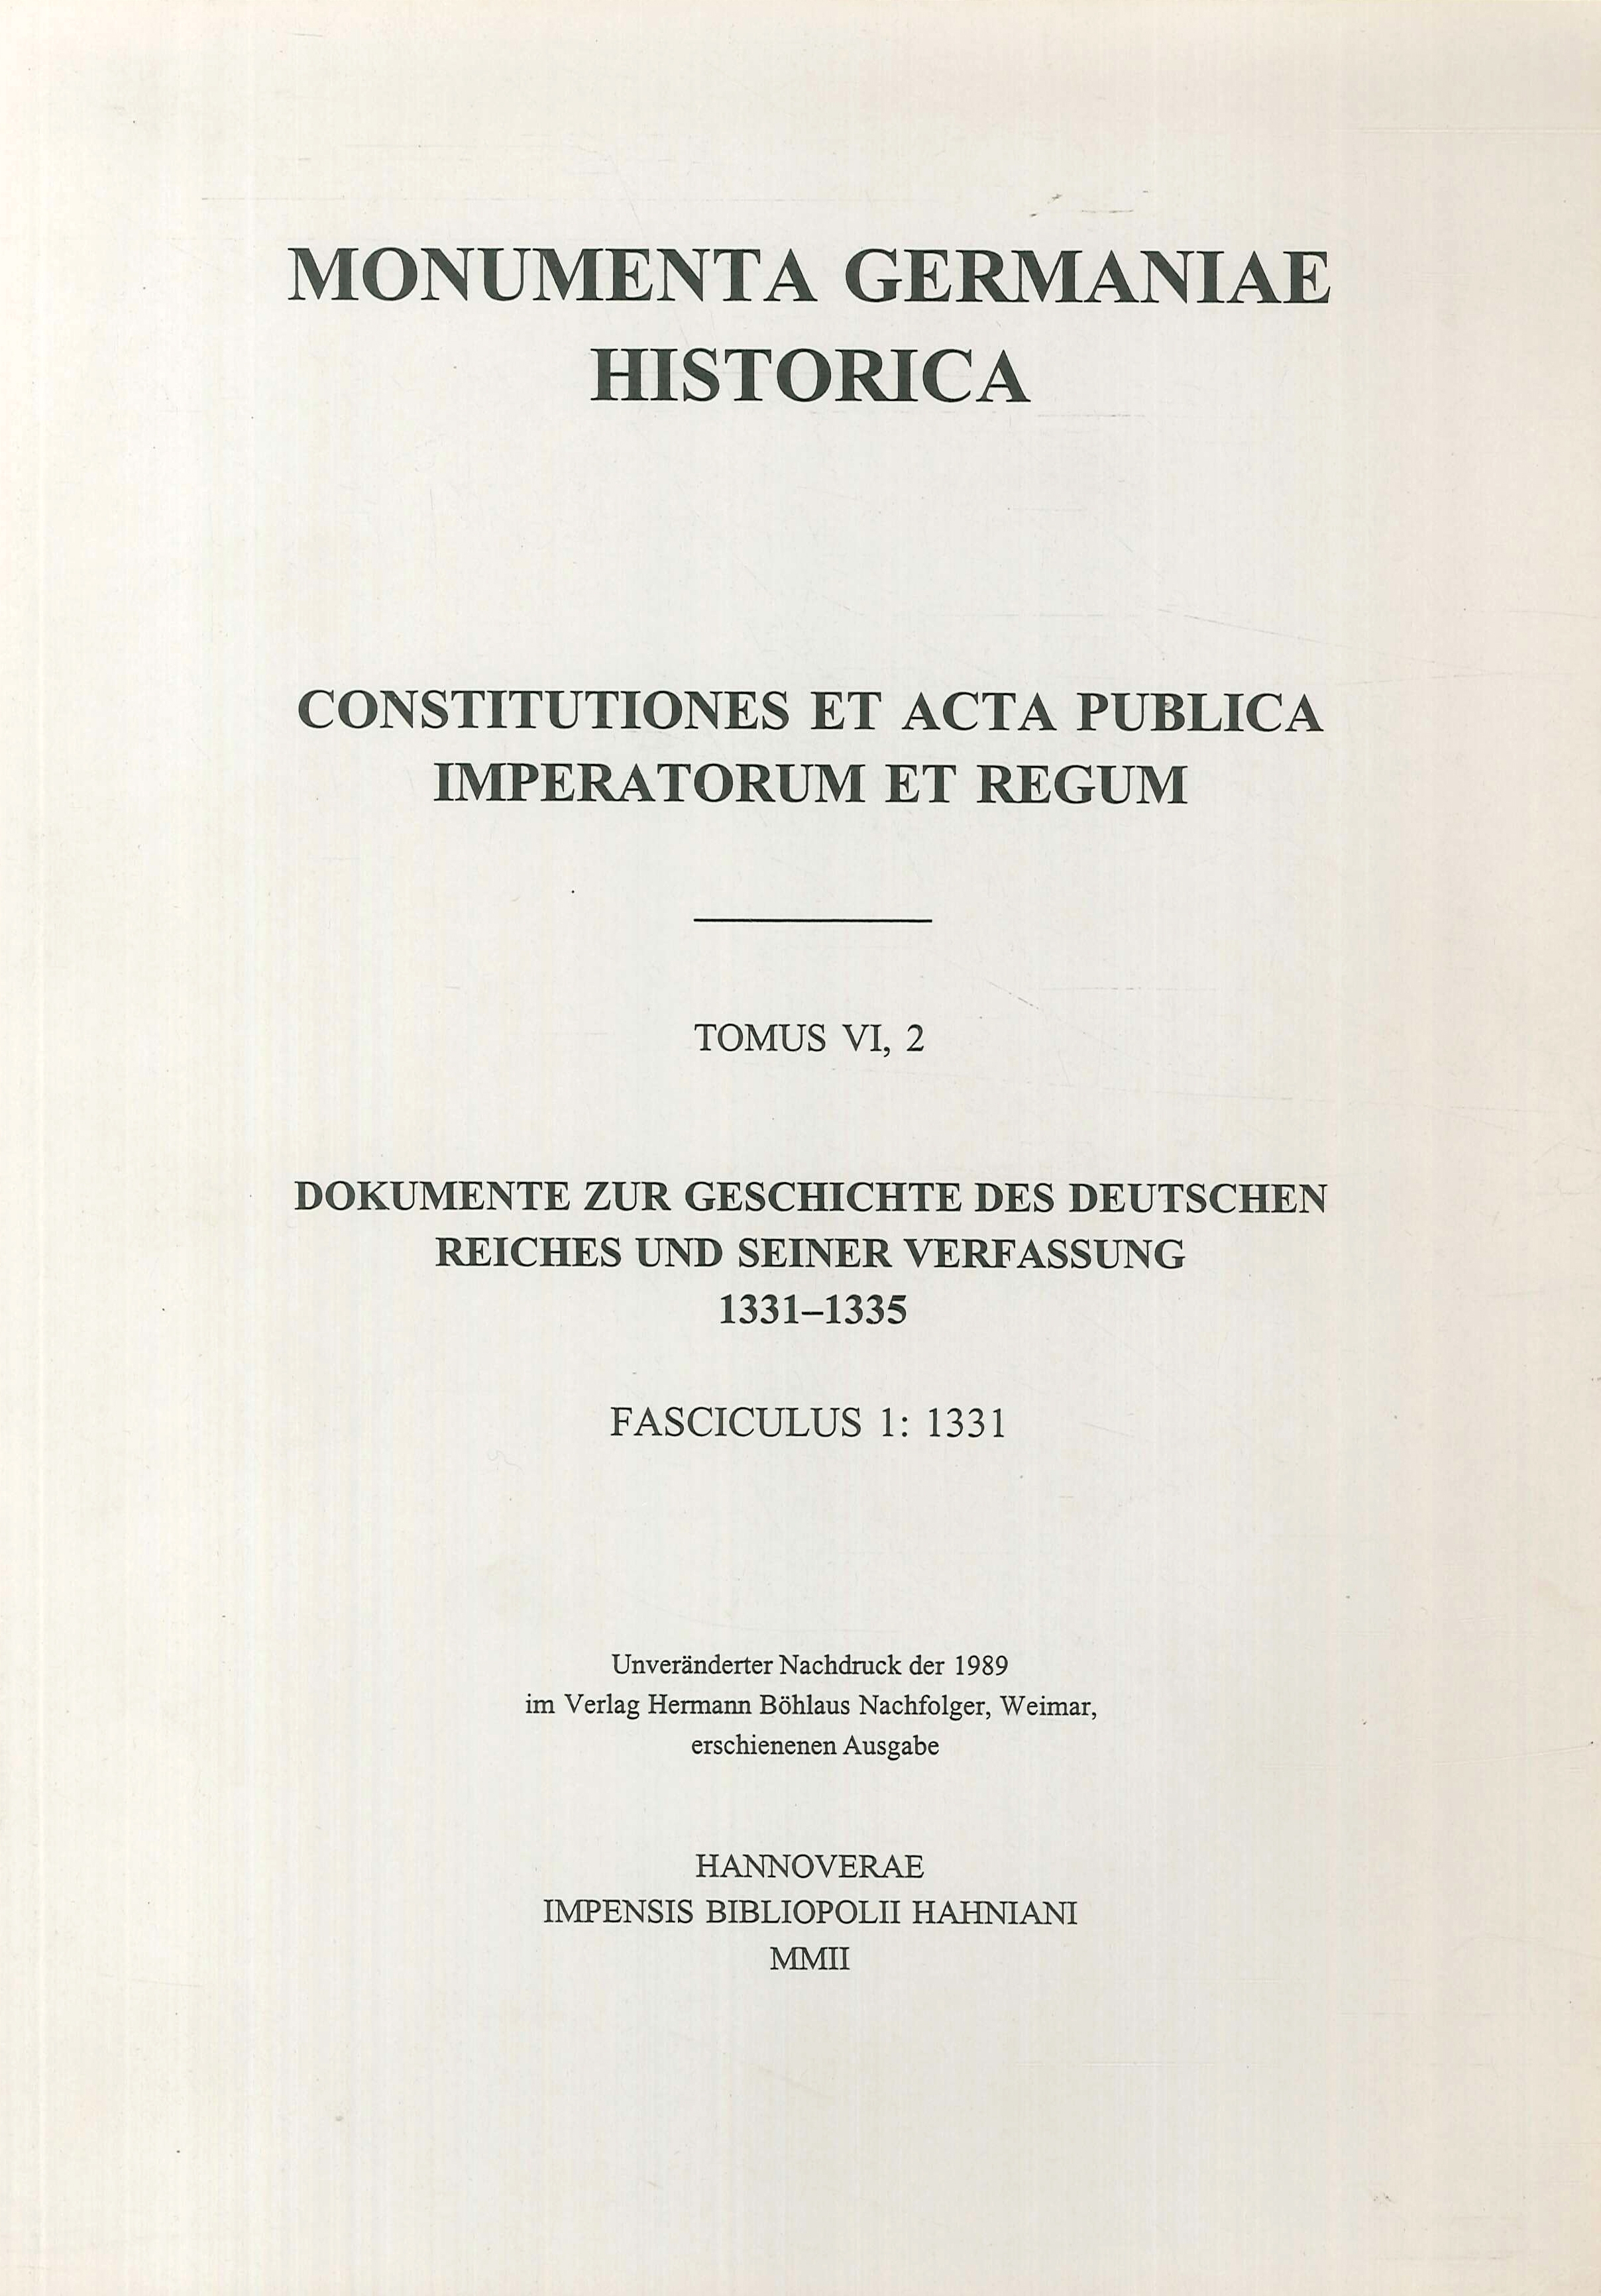 Constitutiones et acta publica imperatorum et regum (1331-1335), Teil 1 (Monumenta Germaniae Historica. '/Hahn /Hiersemann')